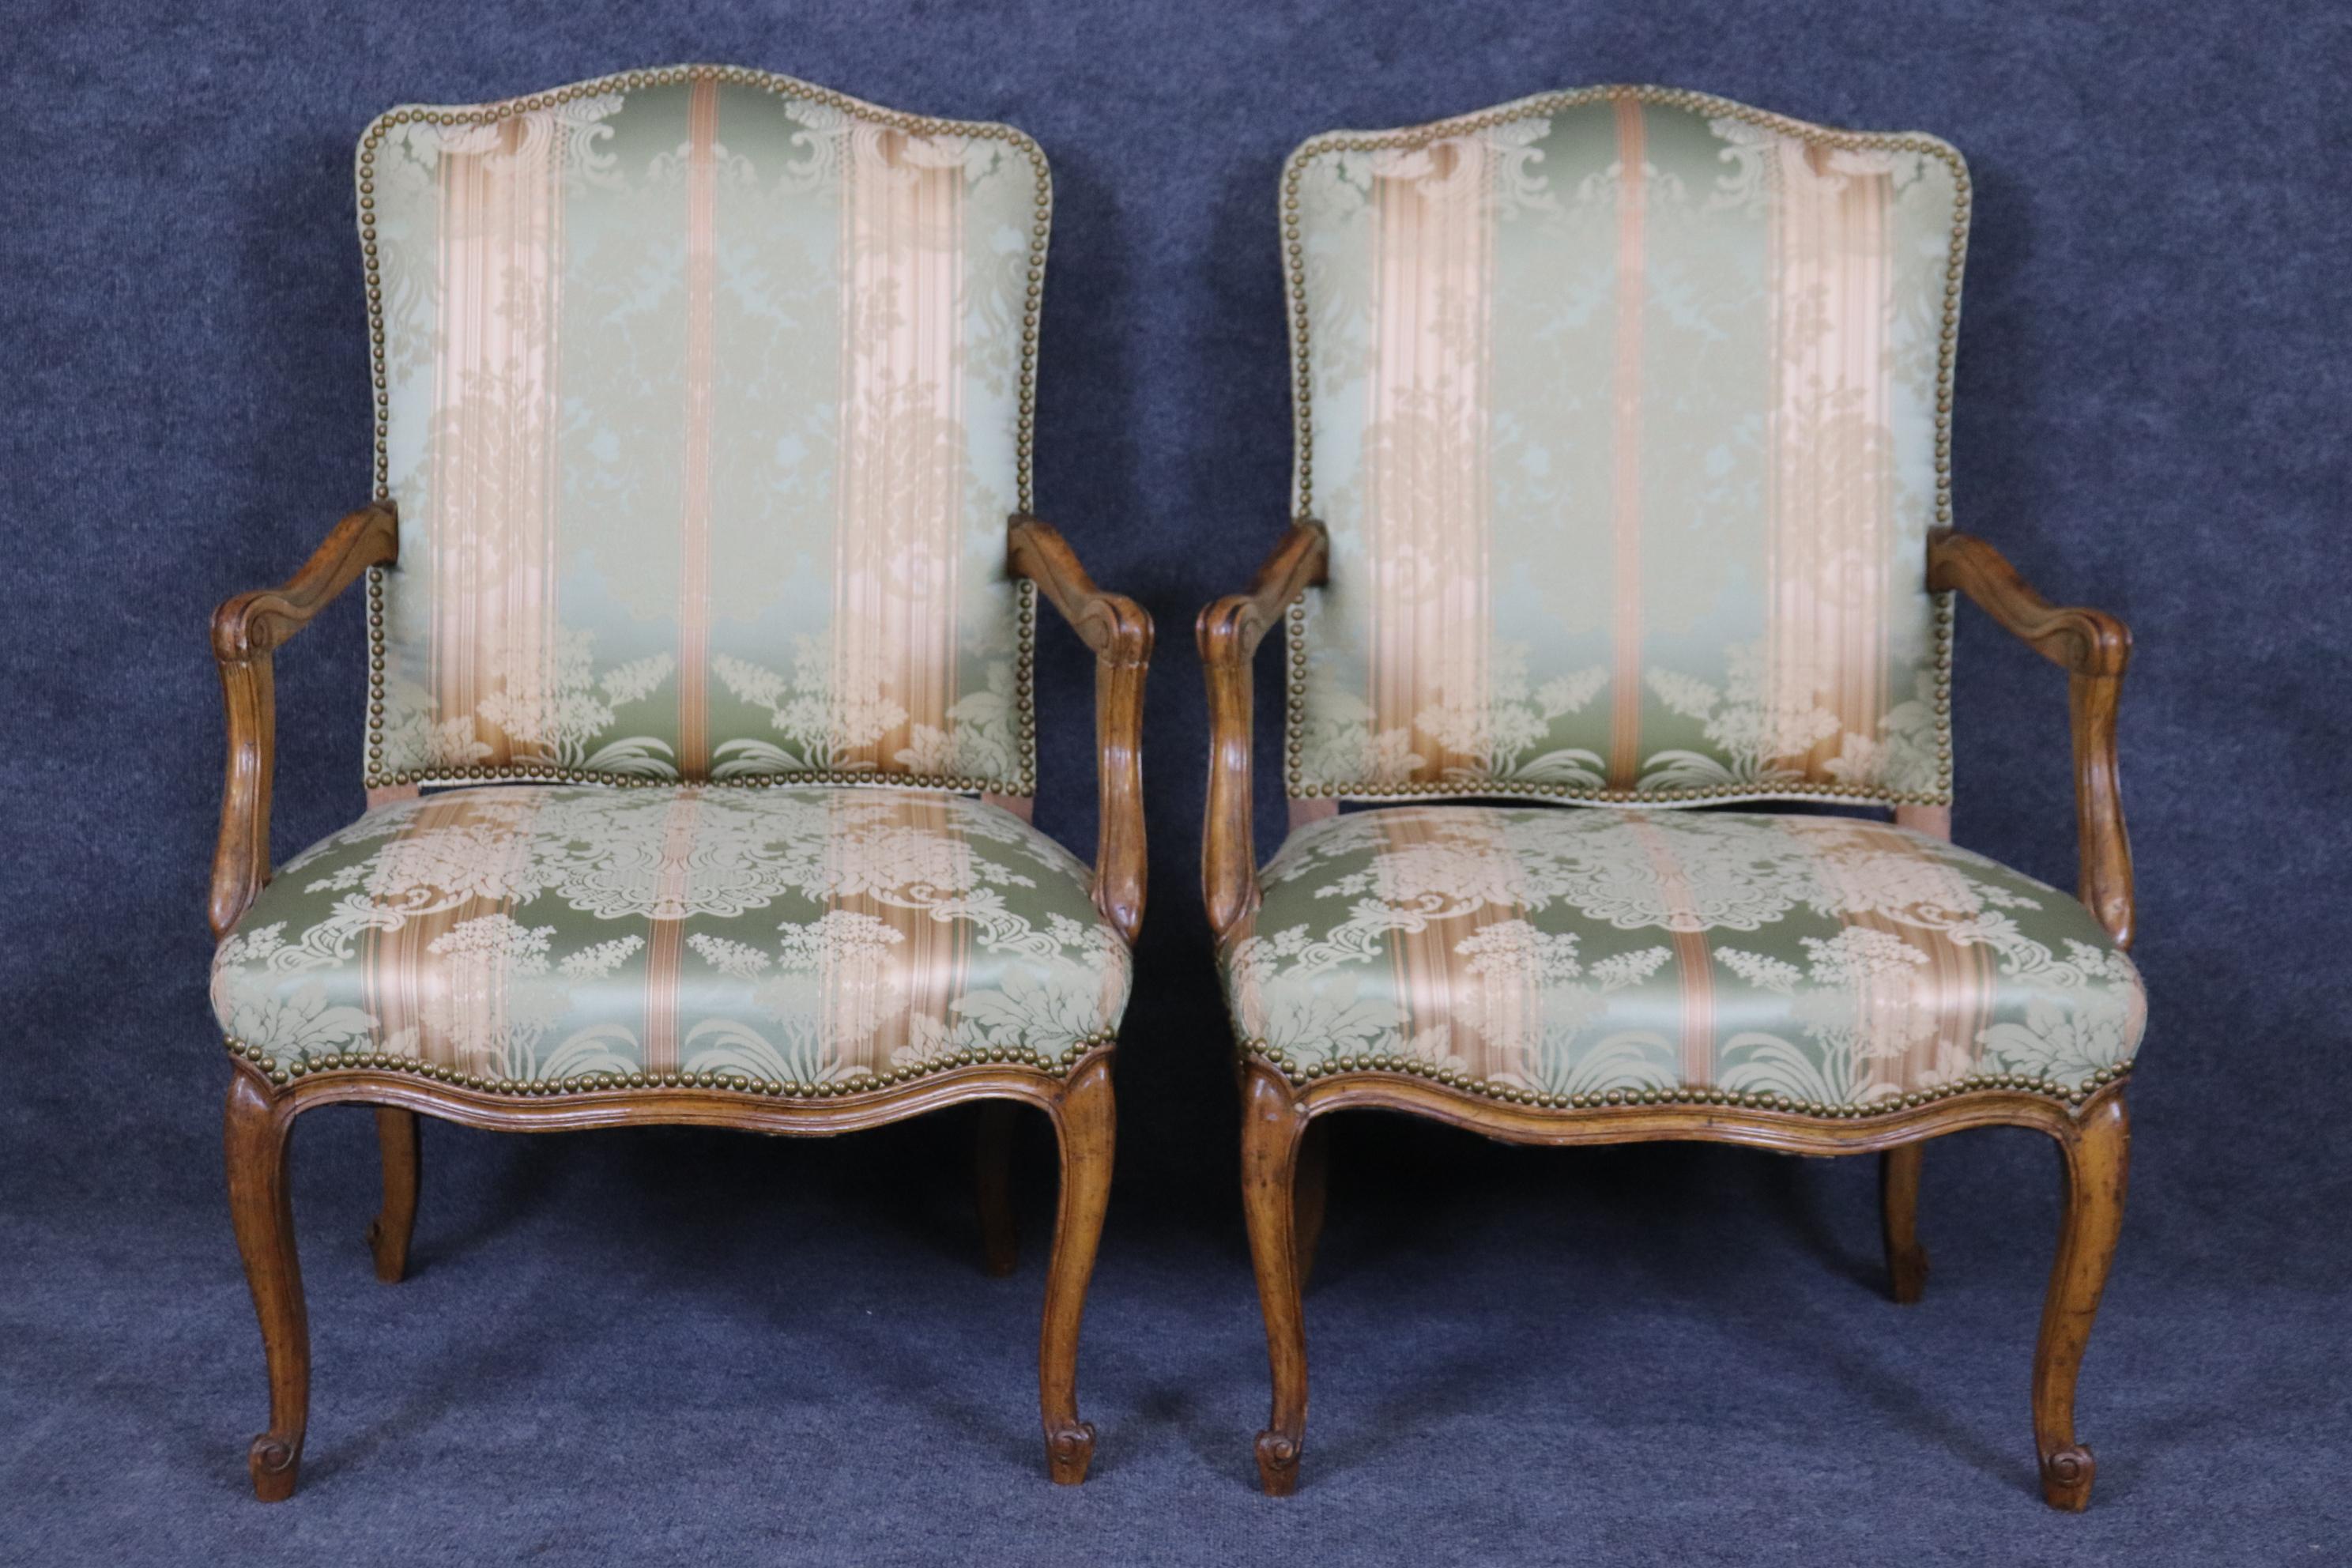 Il s'agit d'une superbe paire de fauteuils de style Louis XV, tapissés de damas de soie et garnis de têtes de clous. Les chaises sont en bon état et très fraîches et propres. Ils ont été utilisés et peuvent donc présenter des taches ou des